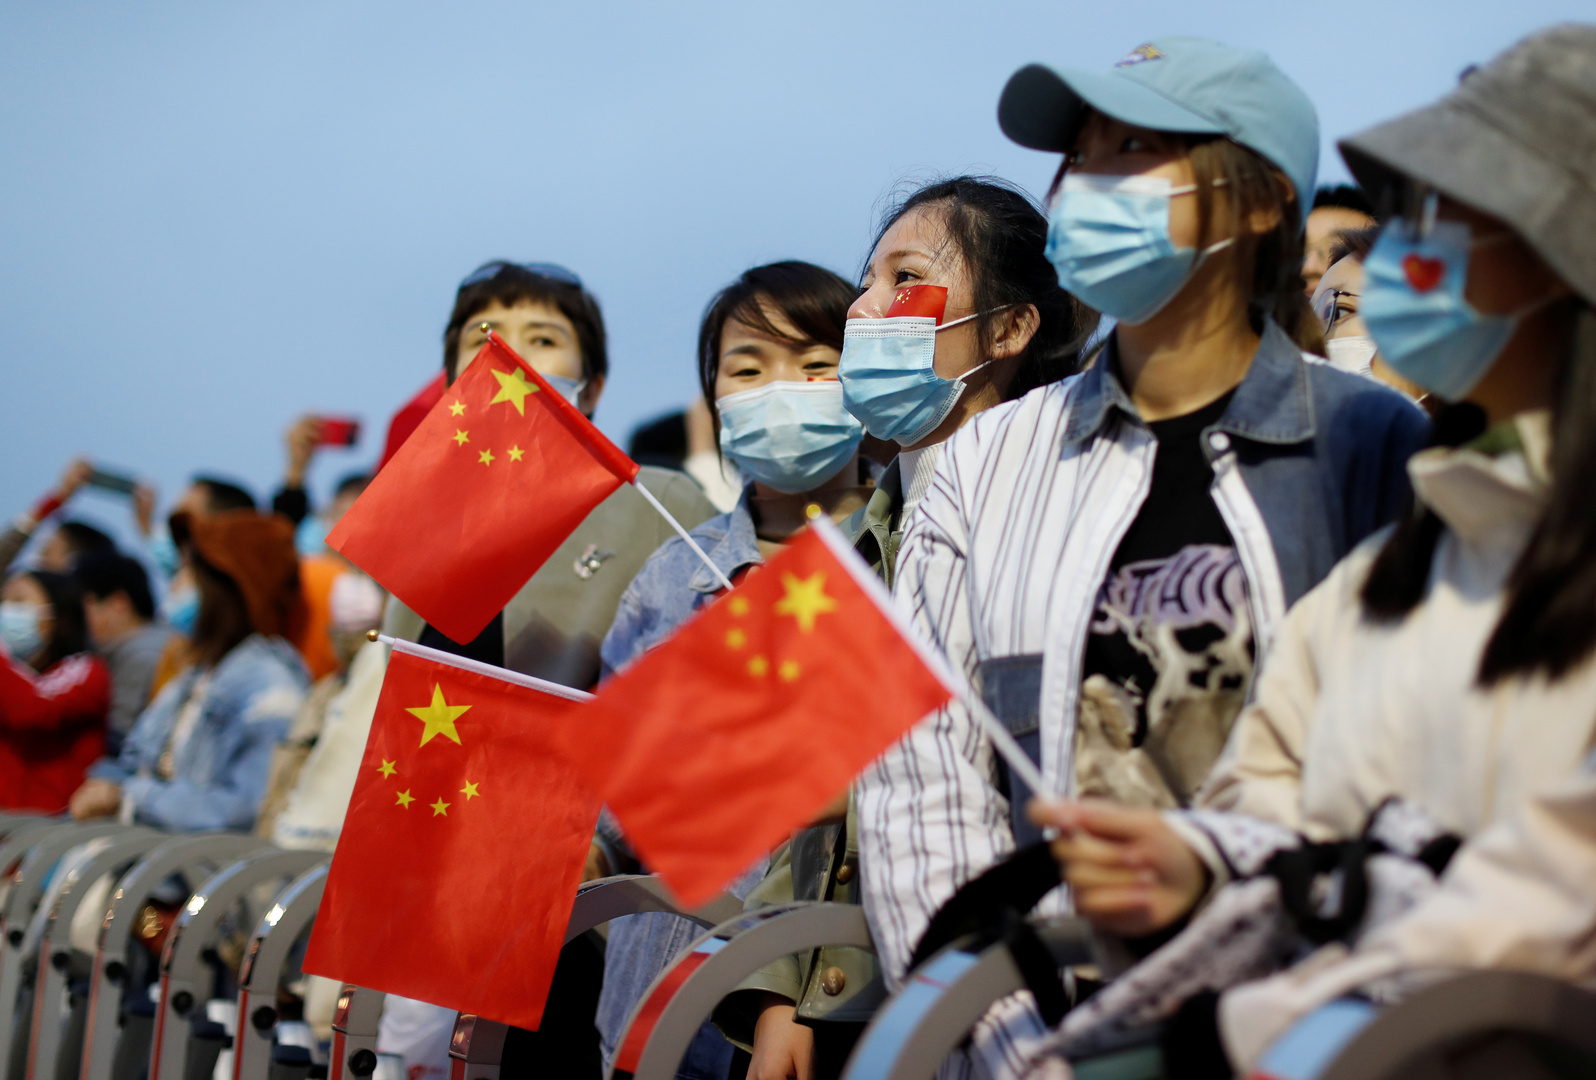 بكين: باب شينجيانغ مفتوح دائما لكن على الأمم المتحدة ألا تحكم مسبقا